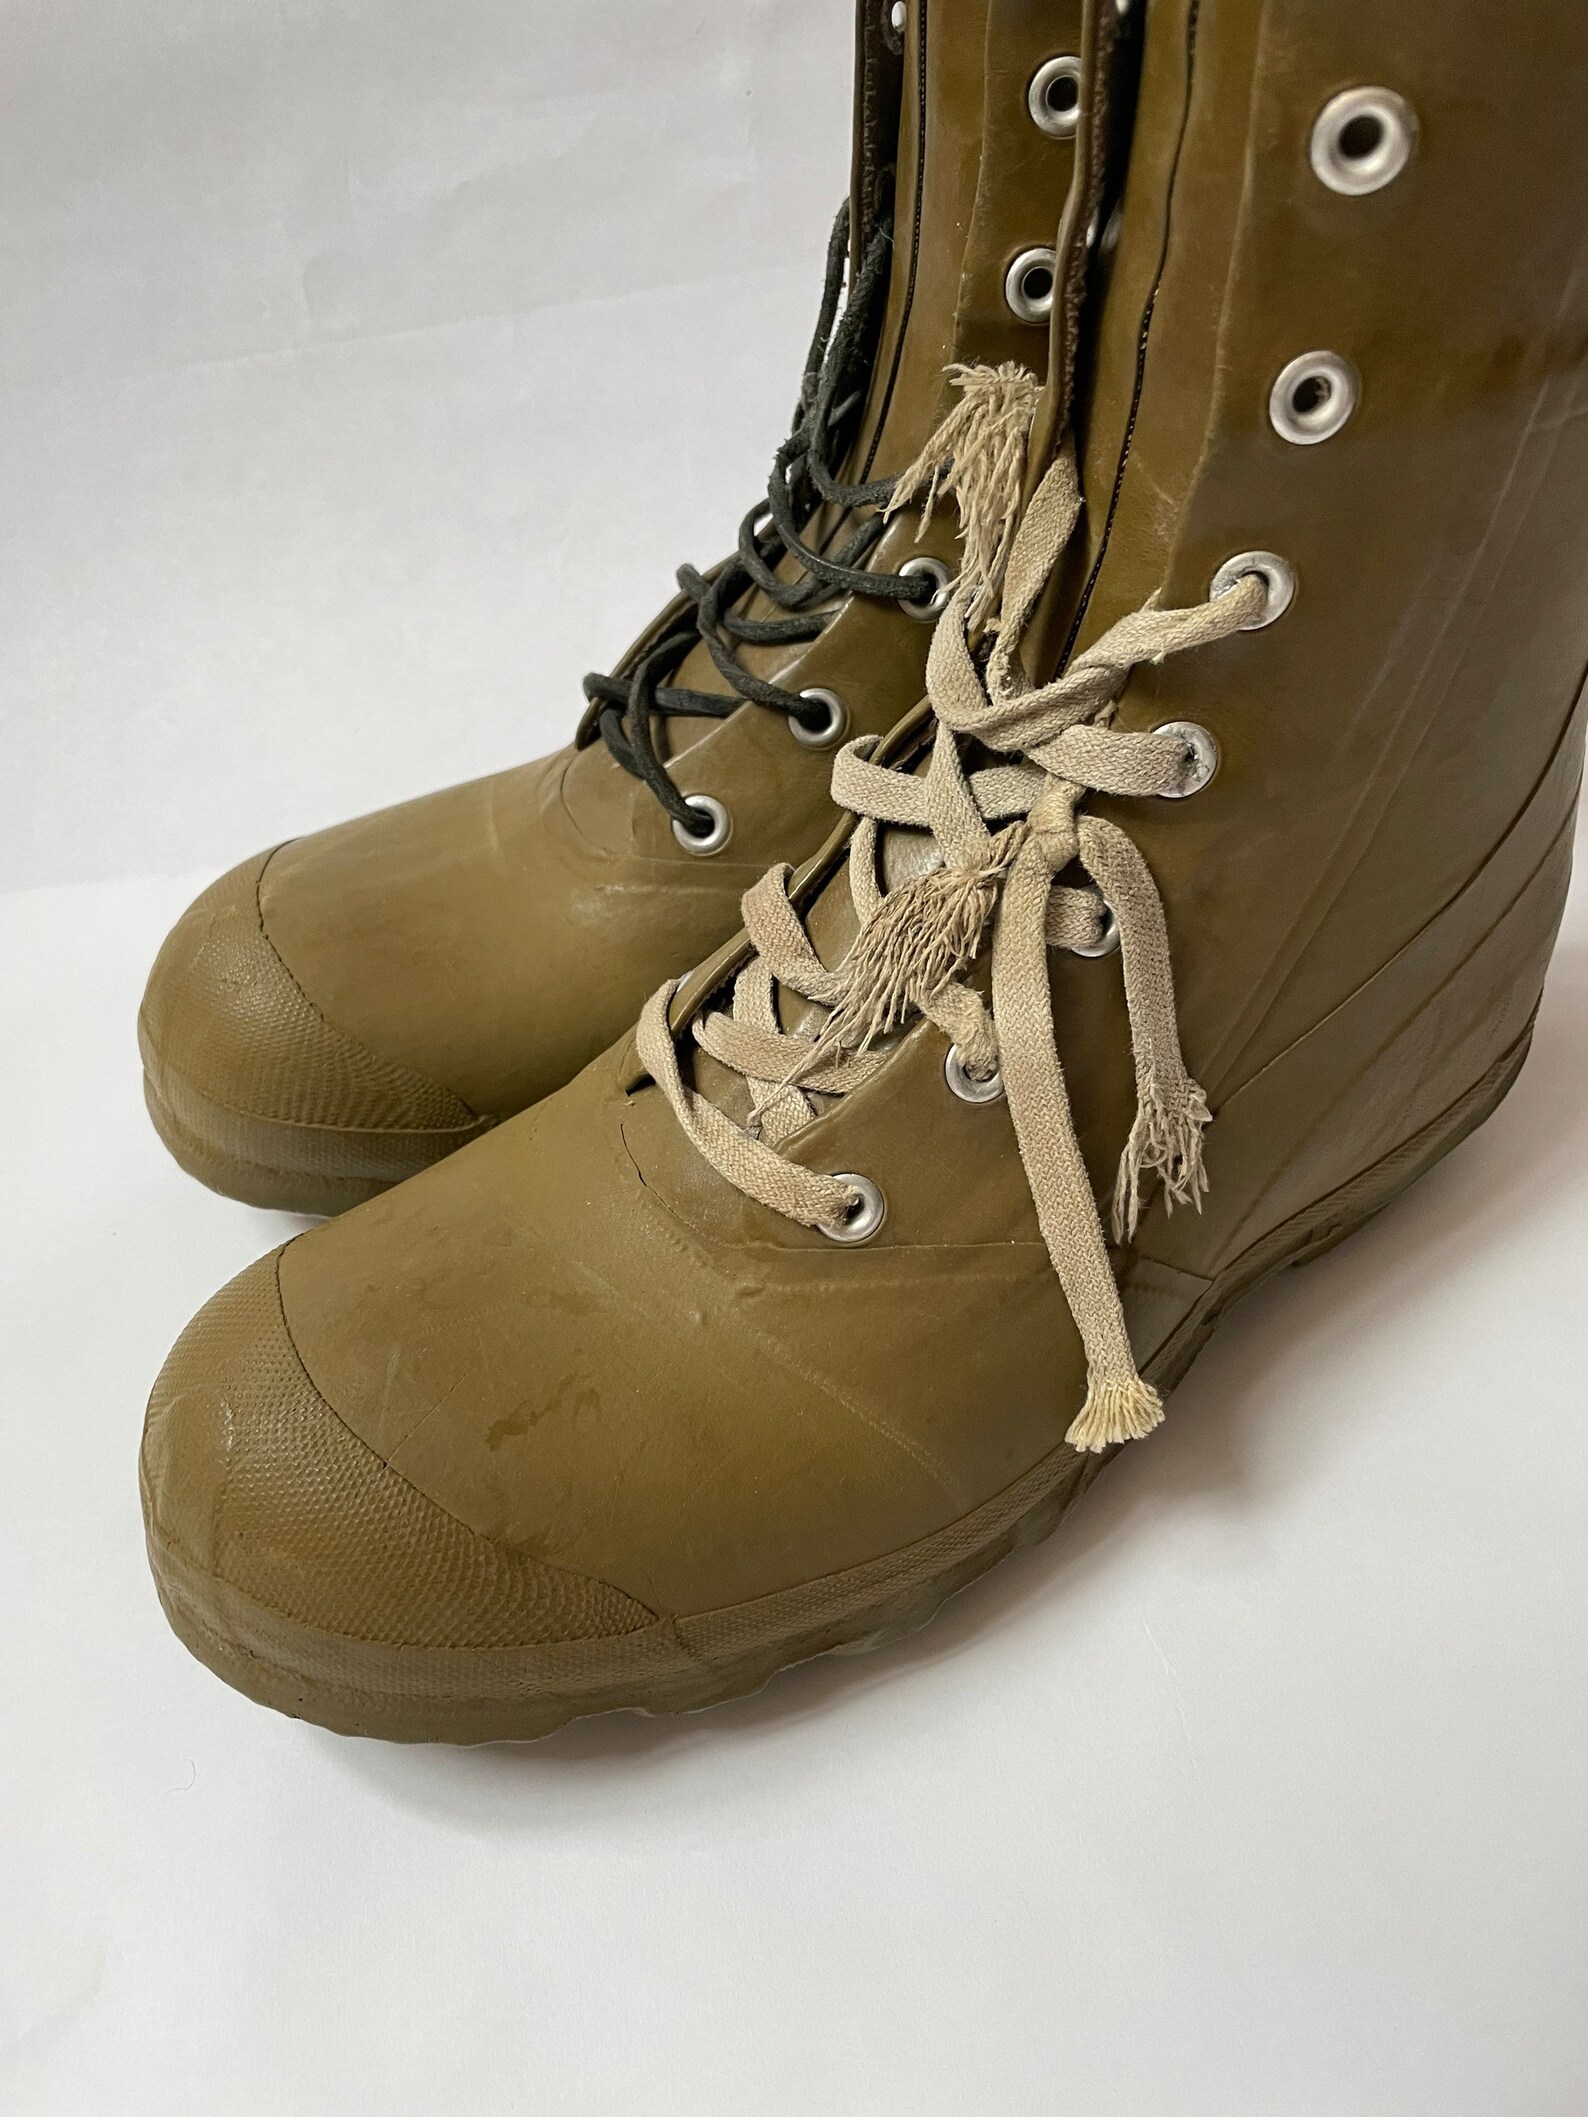 Vintage La Crosse Rubber Boots Size 9 - Etsy